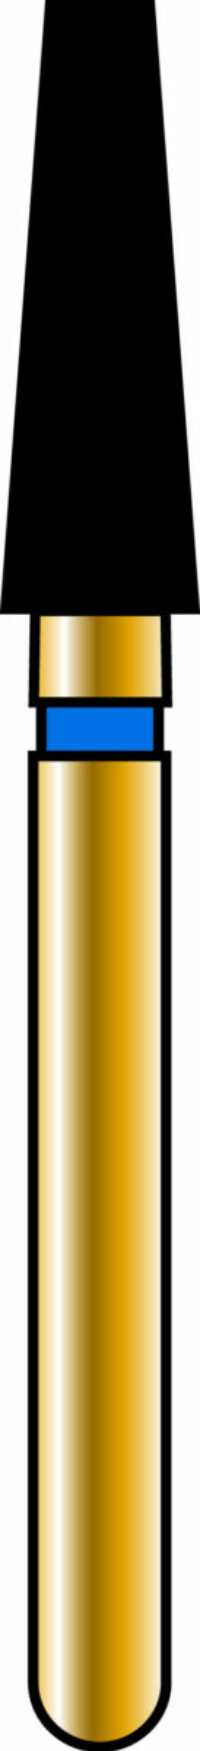 Flat End Taper 23-7mm Gold Diamond Bur - Coarse Grit